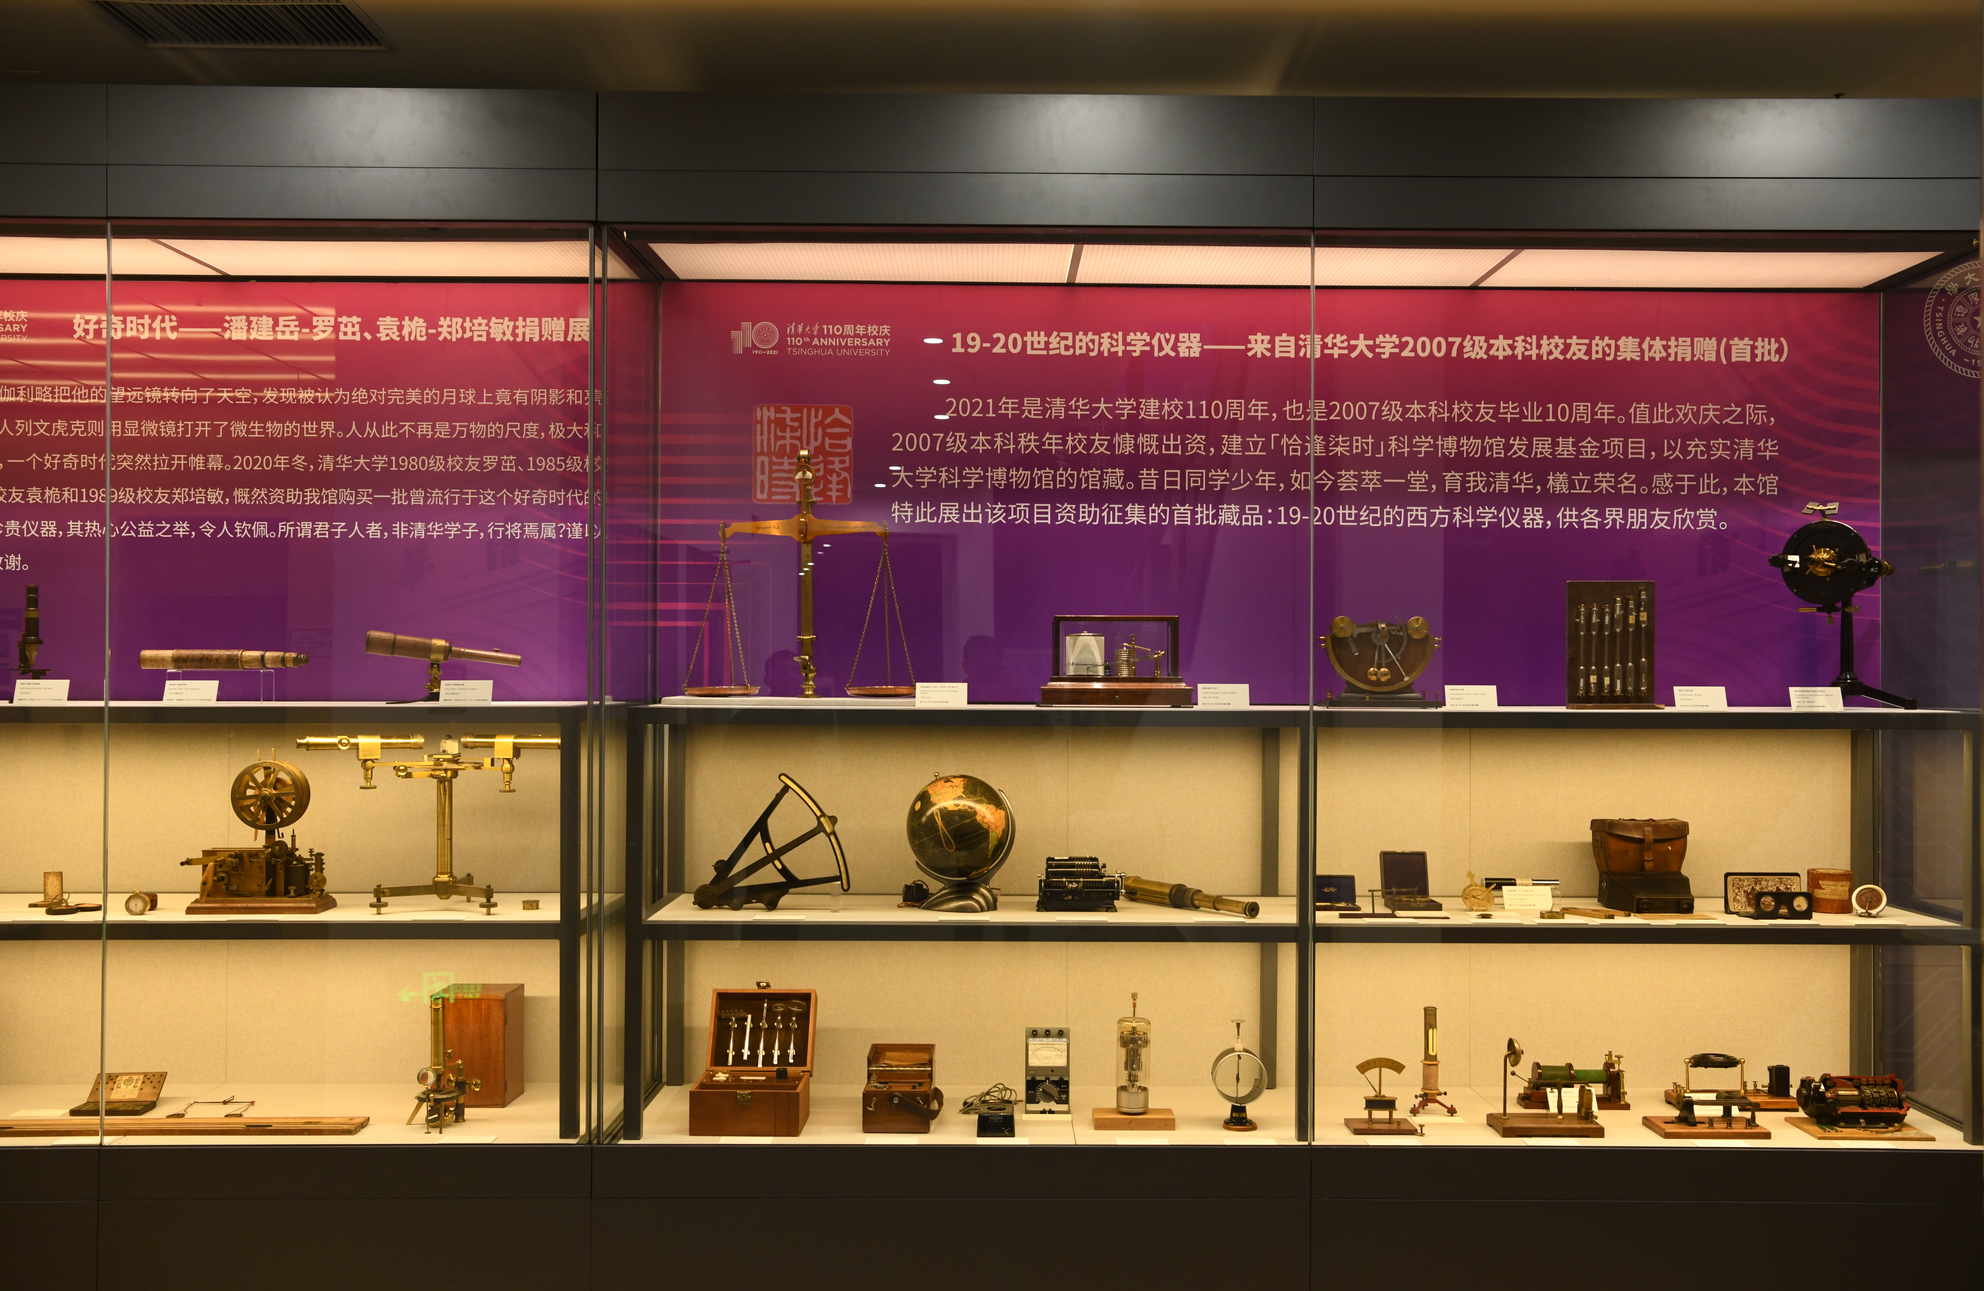 清华大学科学博物馆珍品柜第二季——校友捐赠主题展开幕